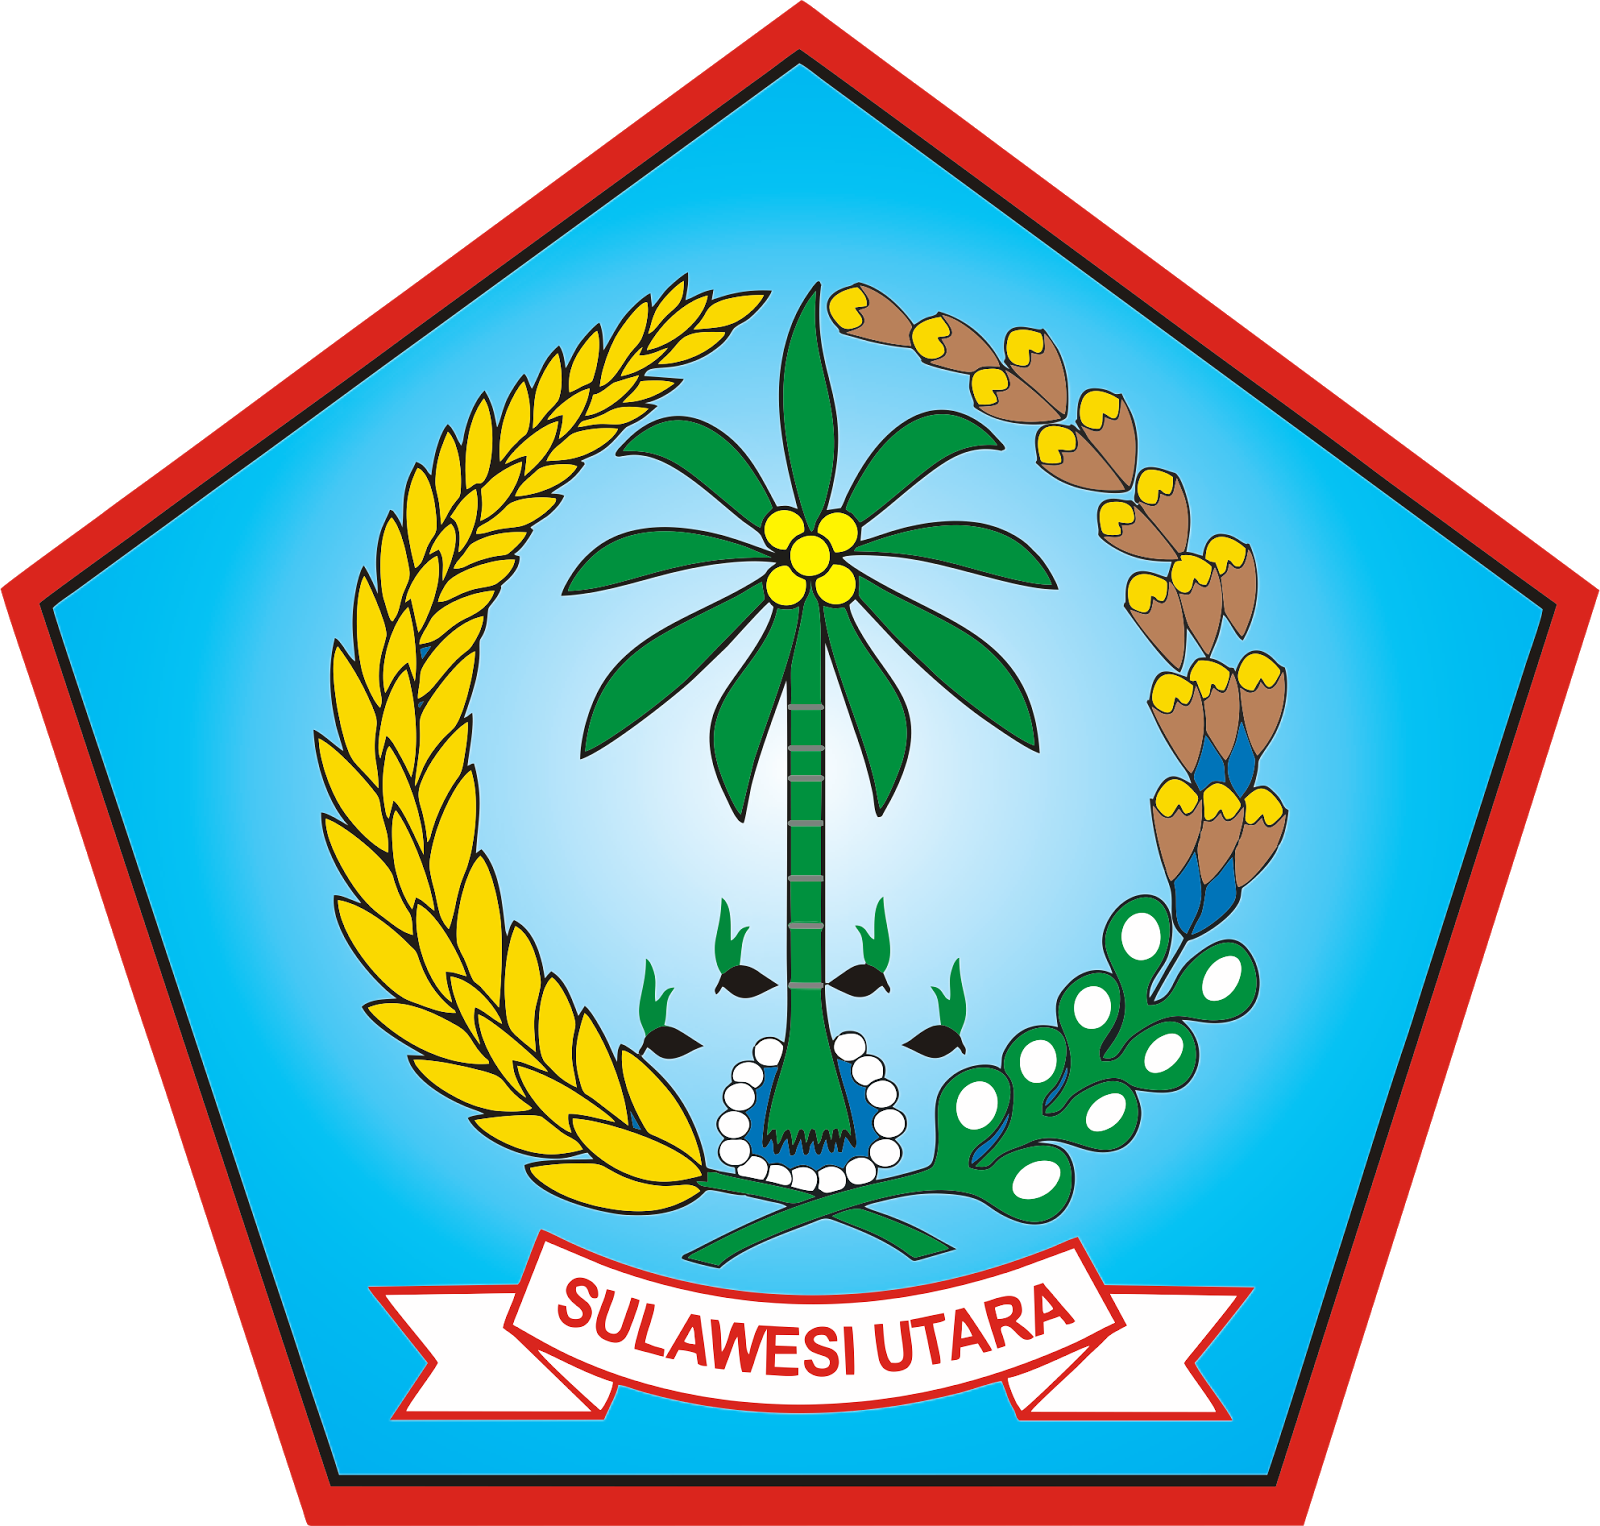 Logo Provinsi Sulawesi Utara Vector File Cdr Coreldraw Download Gratis Dan Mudah Logo Vector